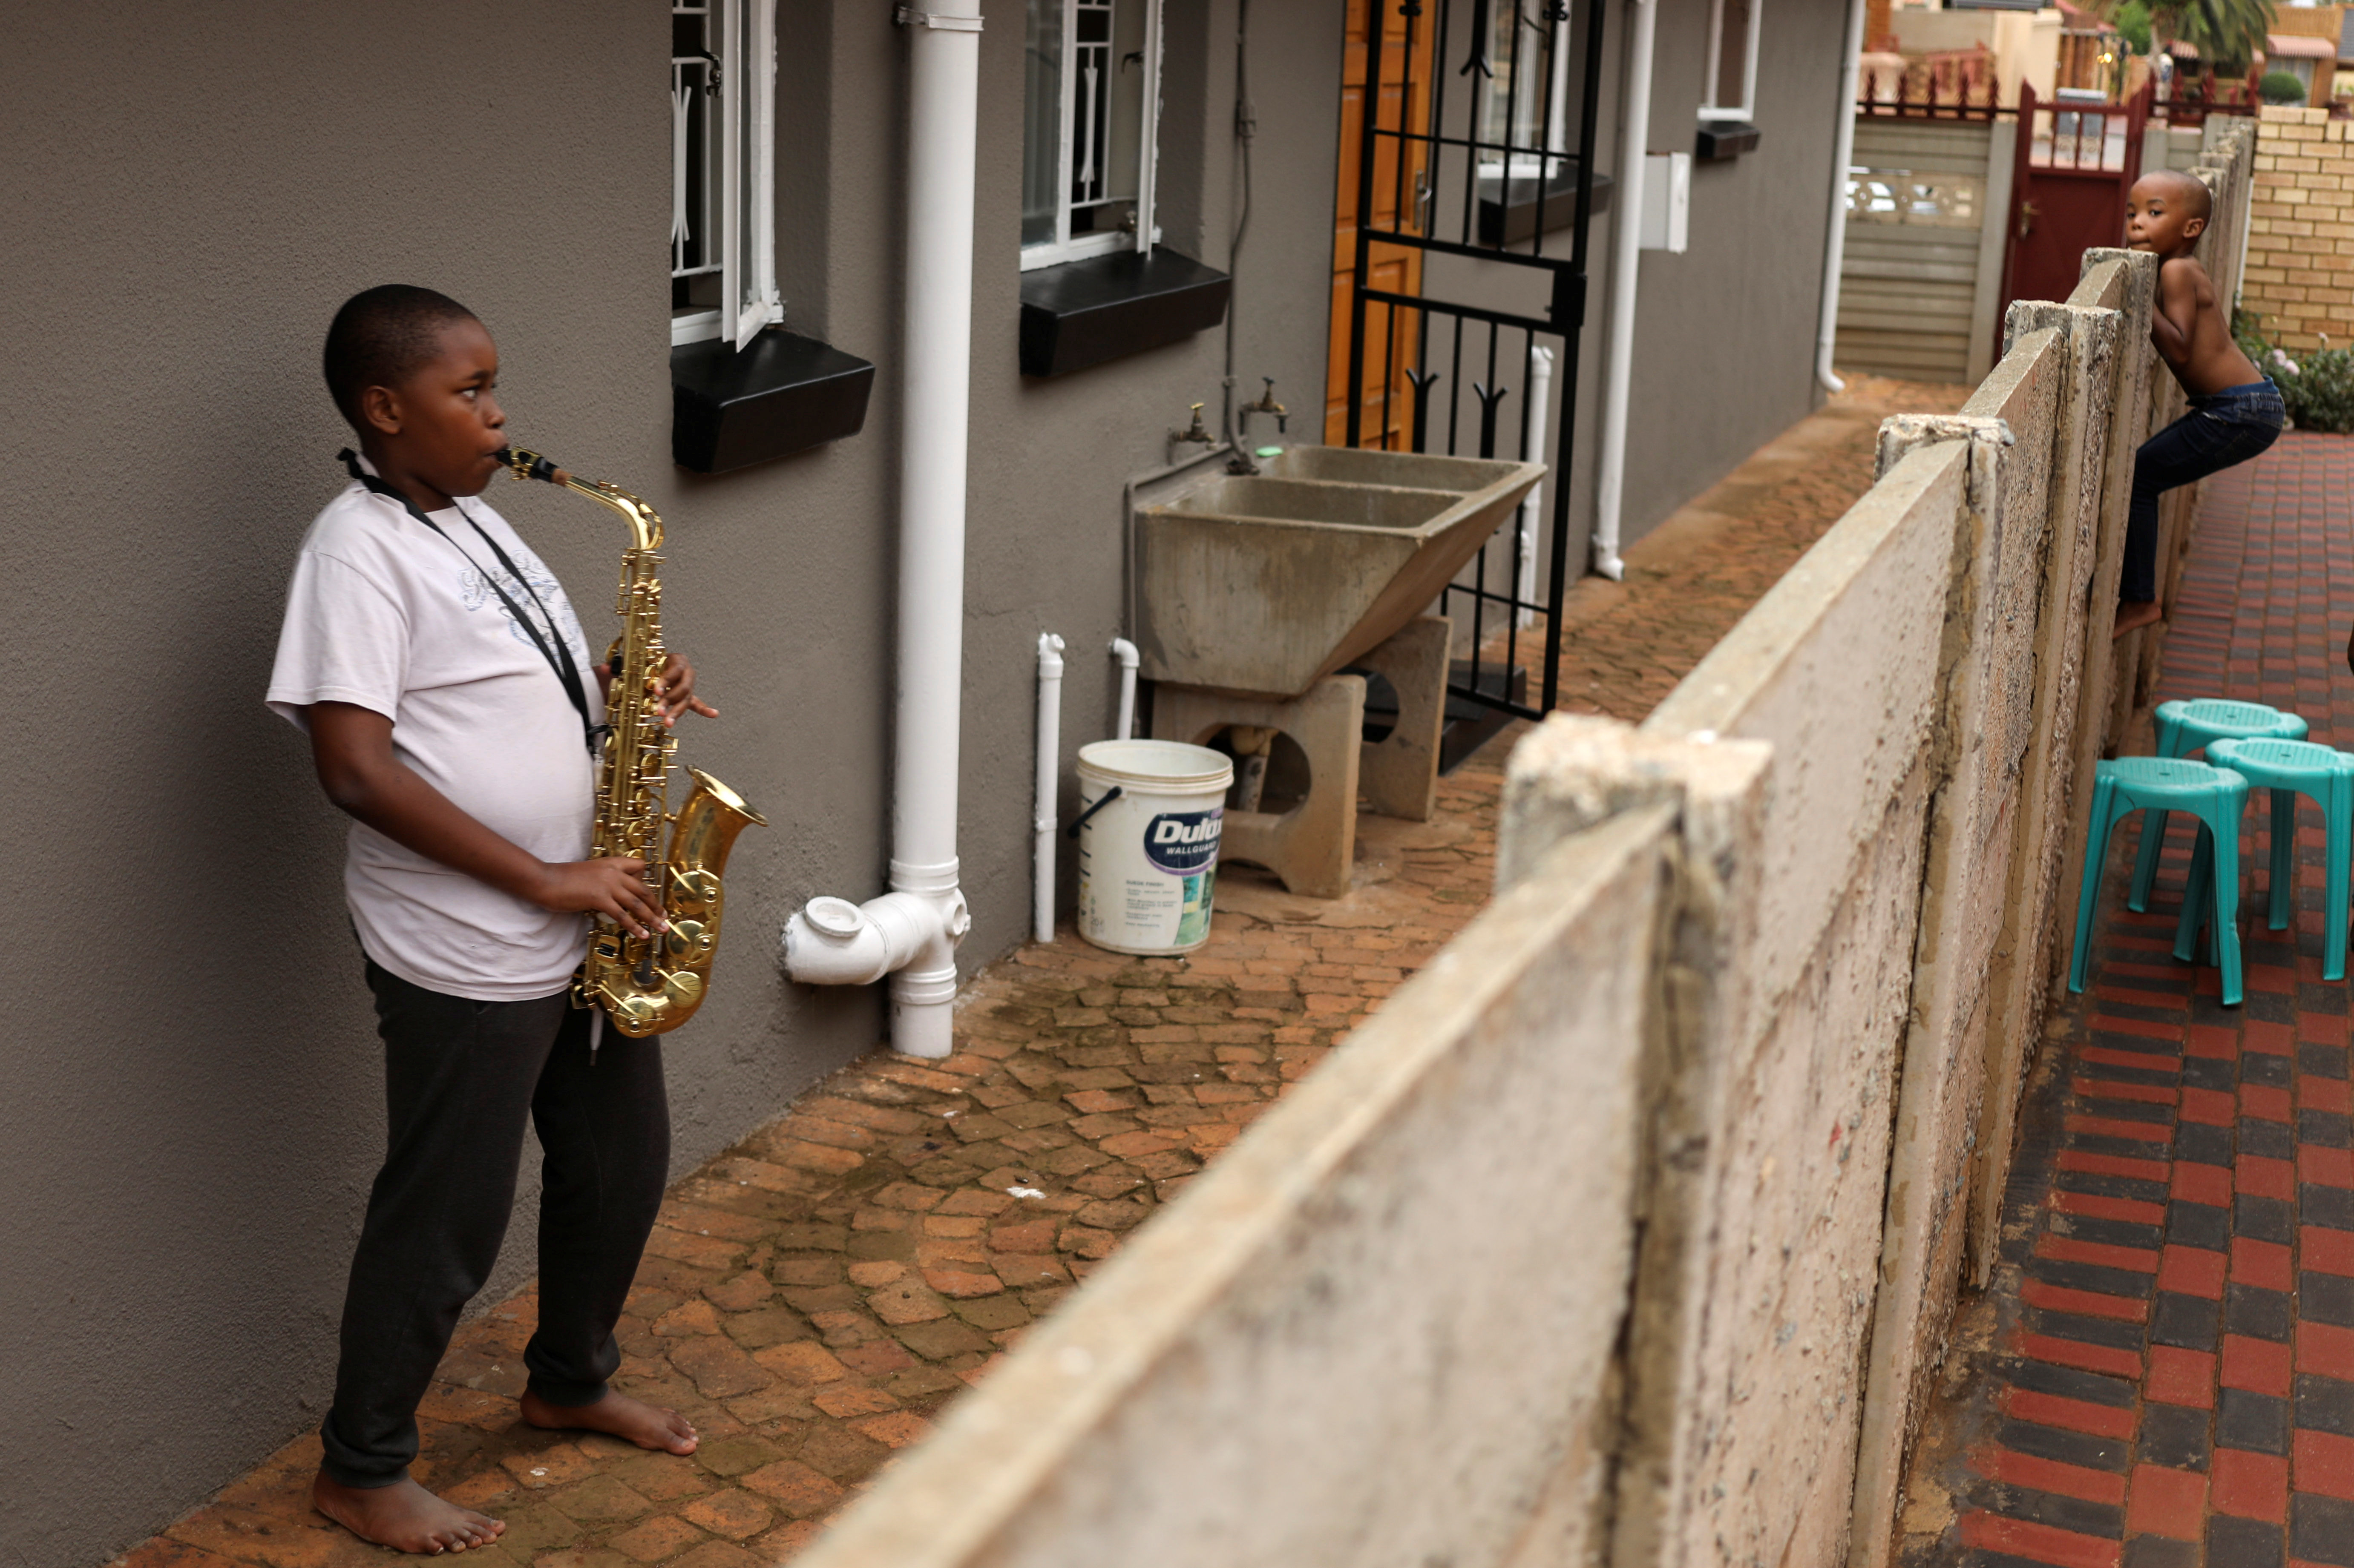 طفل يعزف على آلة الساكسفون خلال فترة إغلاق في جنوب أفريقيا